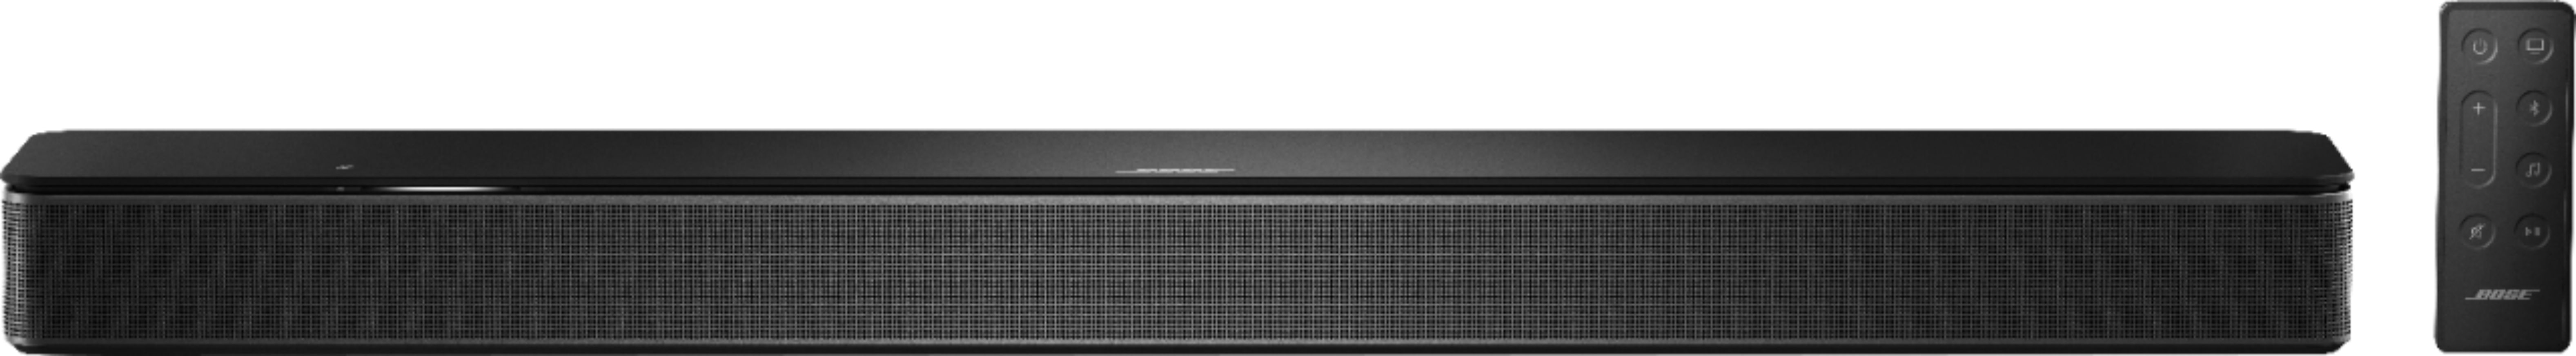 Bose - Smart Soundbar 300 with Voice Assistant - Black